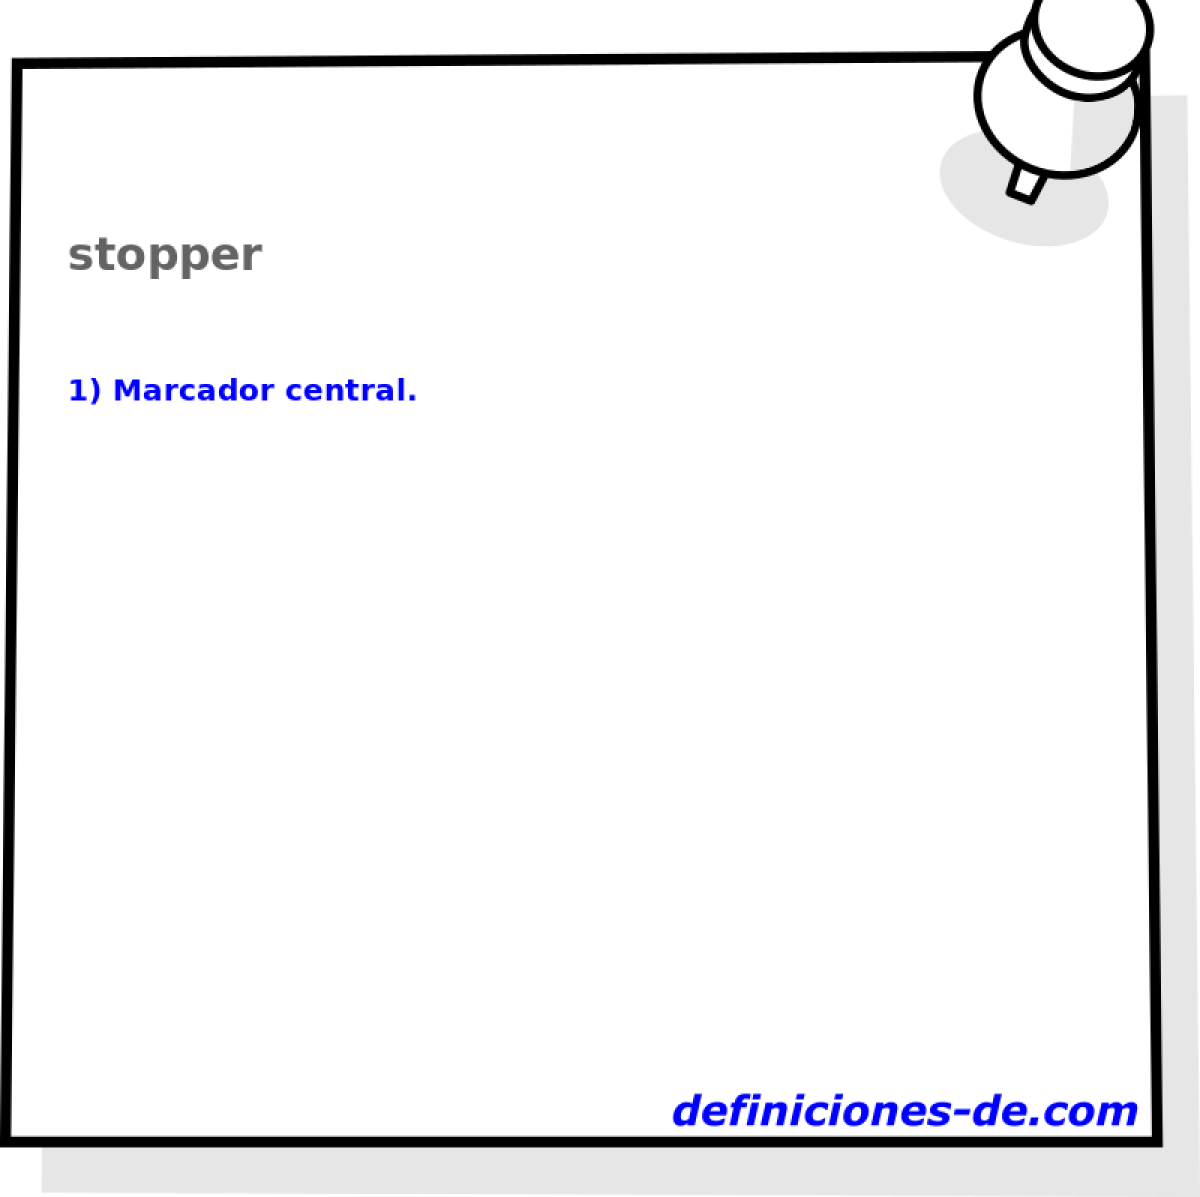 stopper 